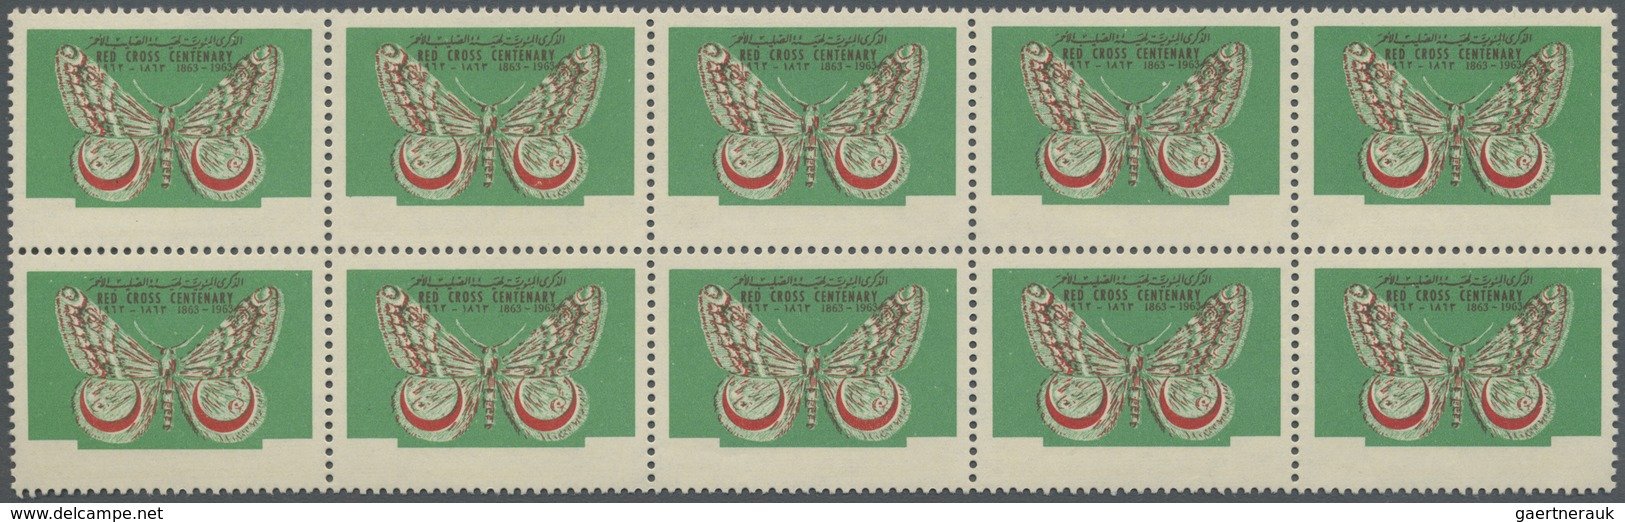 ** Thematik: Tiere-Schmetterlinge / Animals-butterflies: 1963, Dubai, 4np. Butterflies Perf. (Red Cross - Papillons